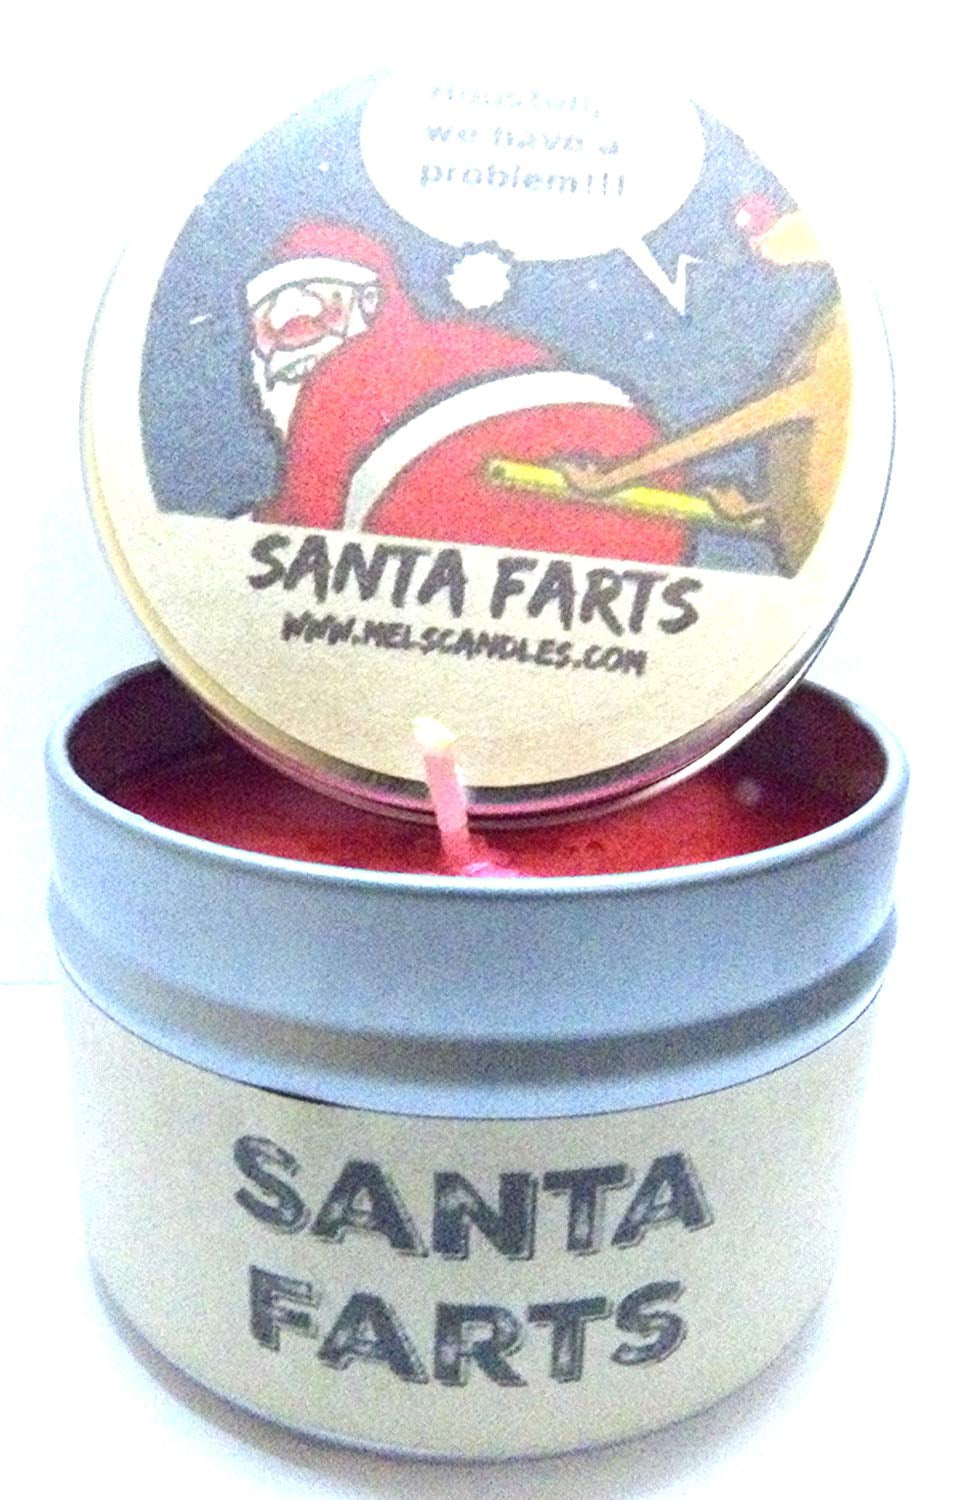 Santa Farts 4oz All Natural Soy Candle Tin Fun Christmas Novelty Candle 